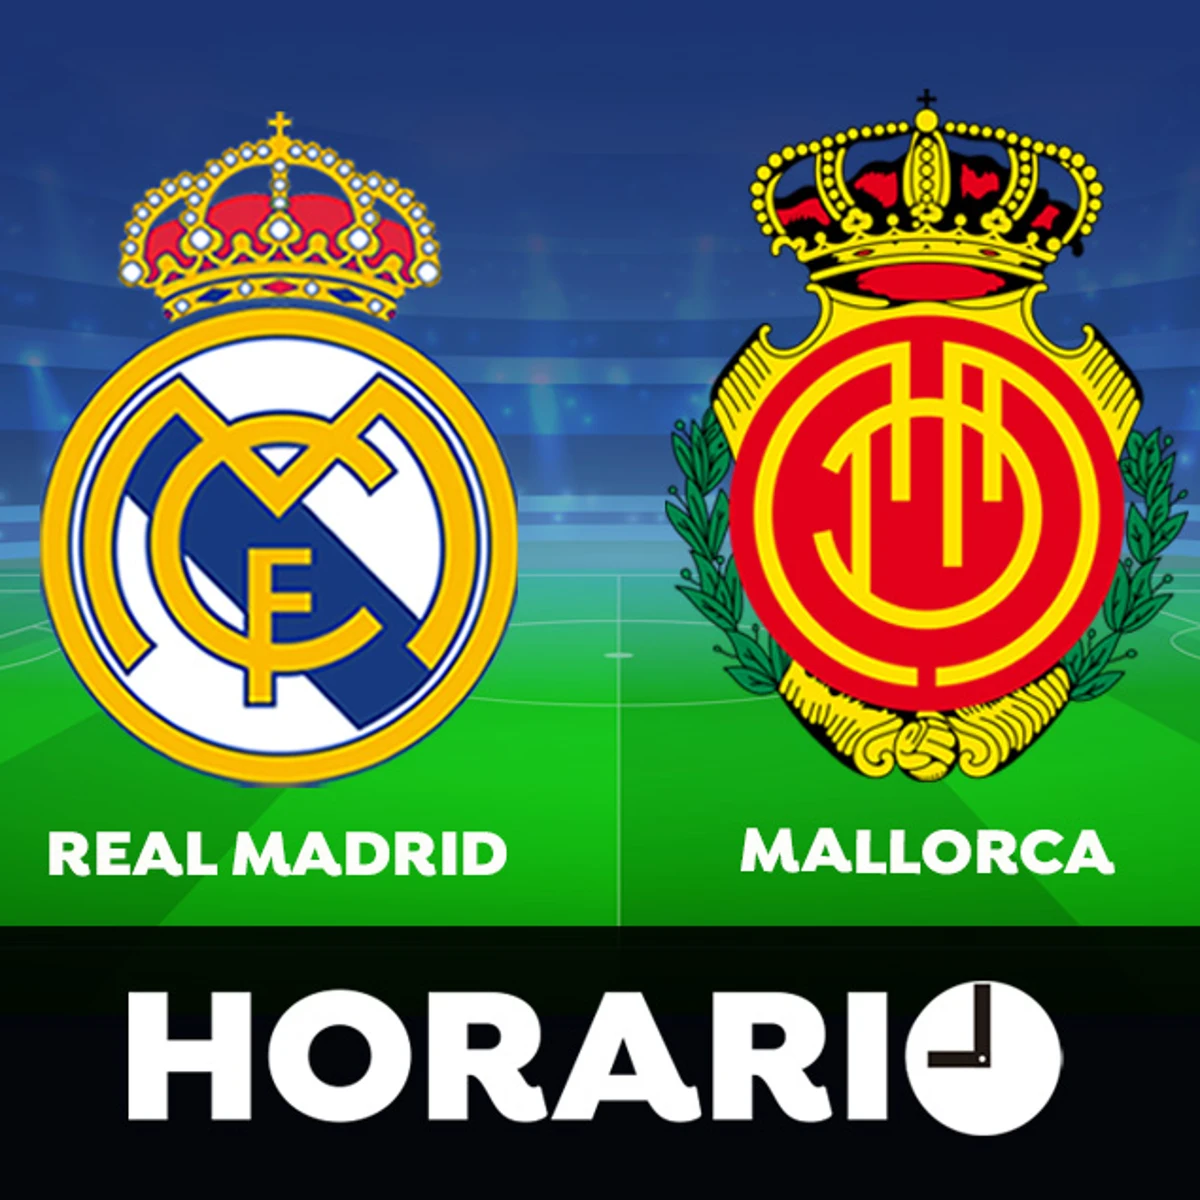 Real Madrid - Mallorca: Horario y ver el